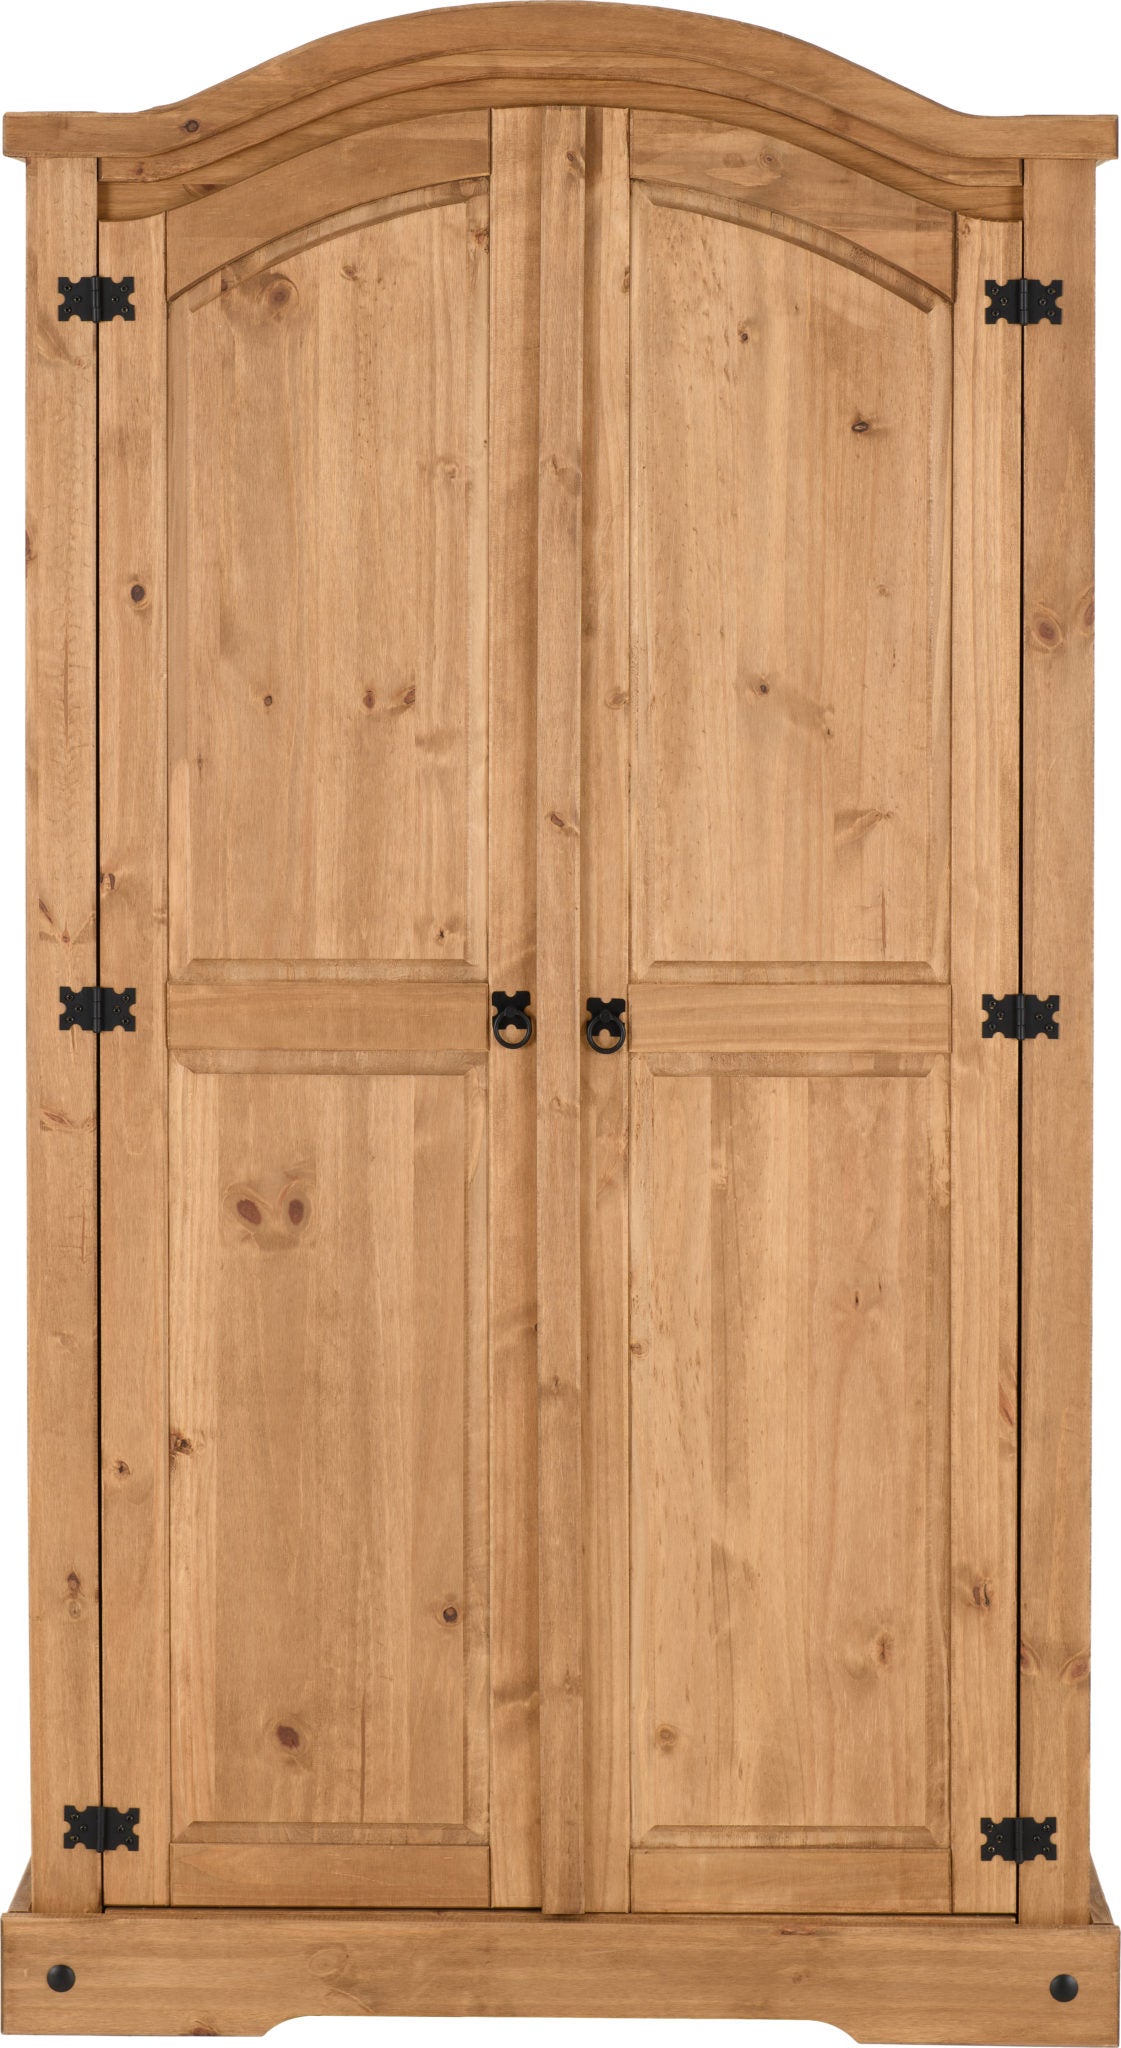 Corona 2 Door Wardrobe- Distressed Waxed Pine